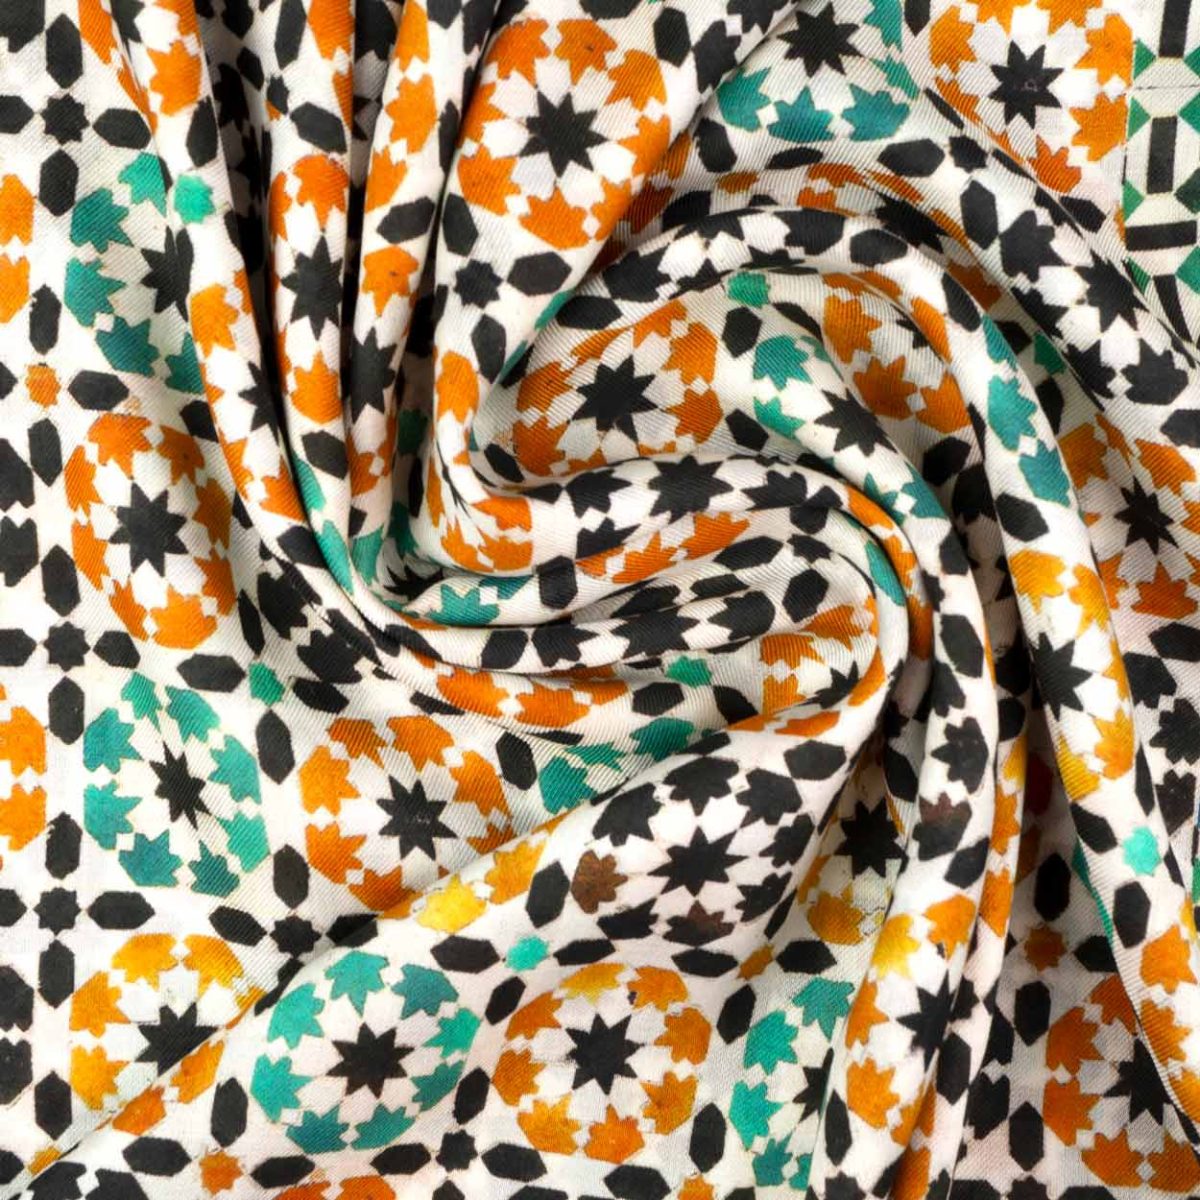 Detalle de fular verde y naranja inspirado en las geometrías islámicas